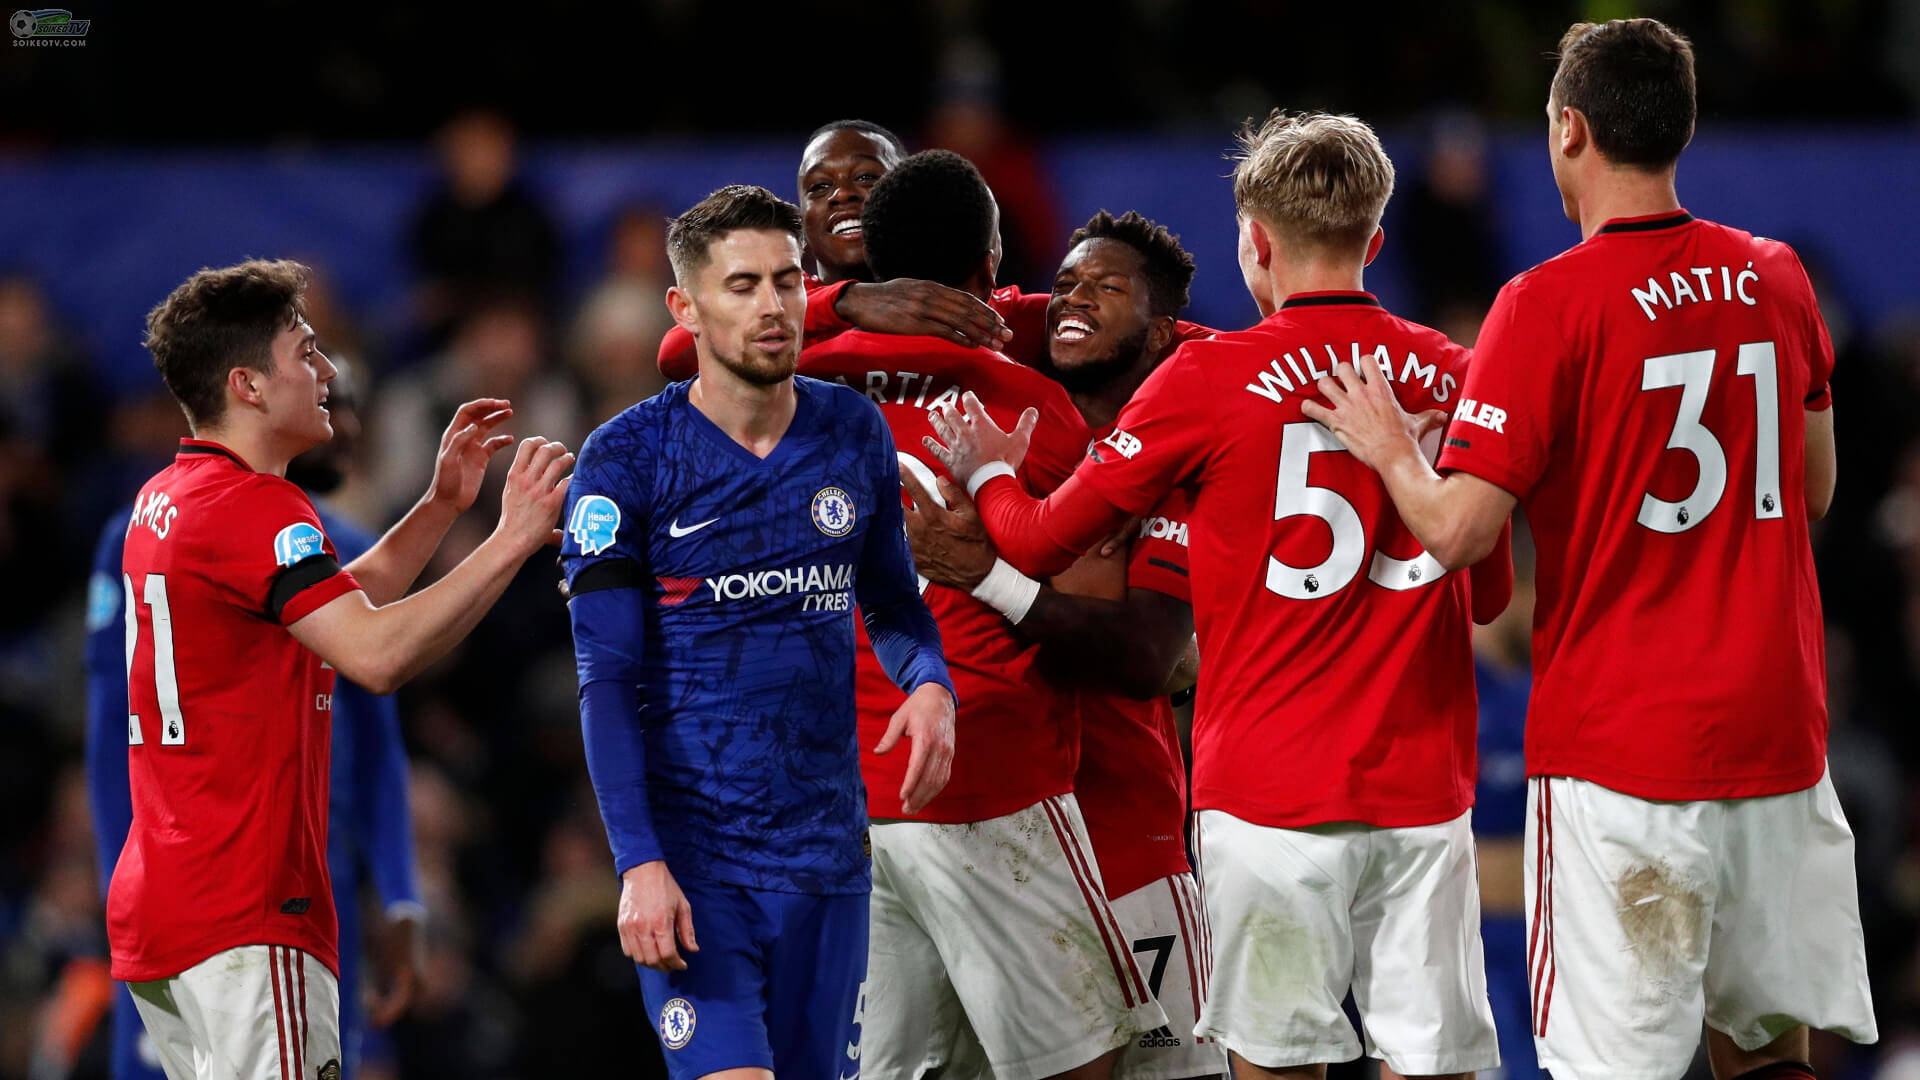 Đen cho Chelsea-The Blue, và đỏ cho Man United-The Red Devils!